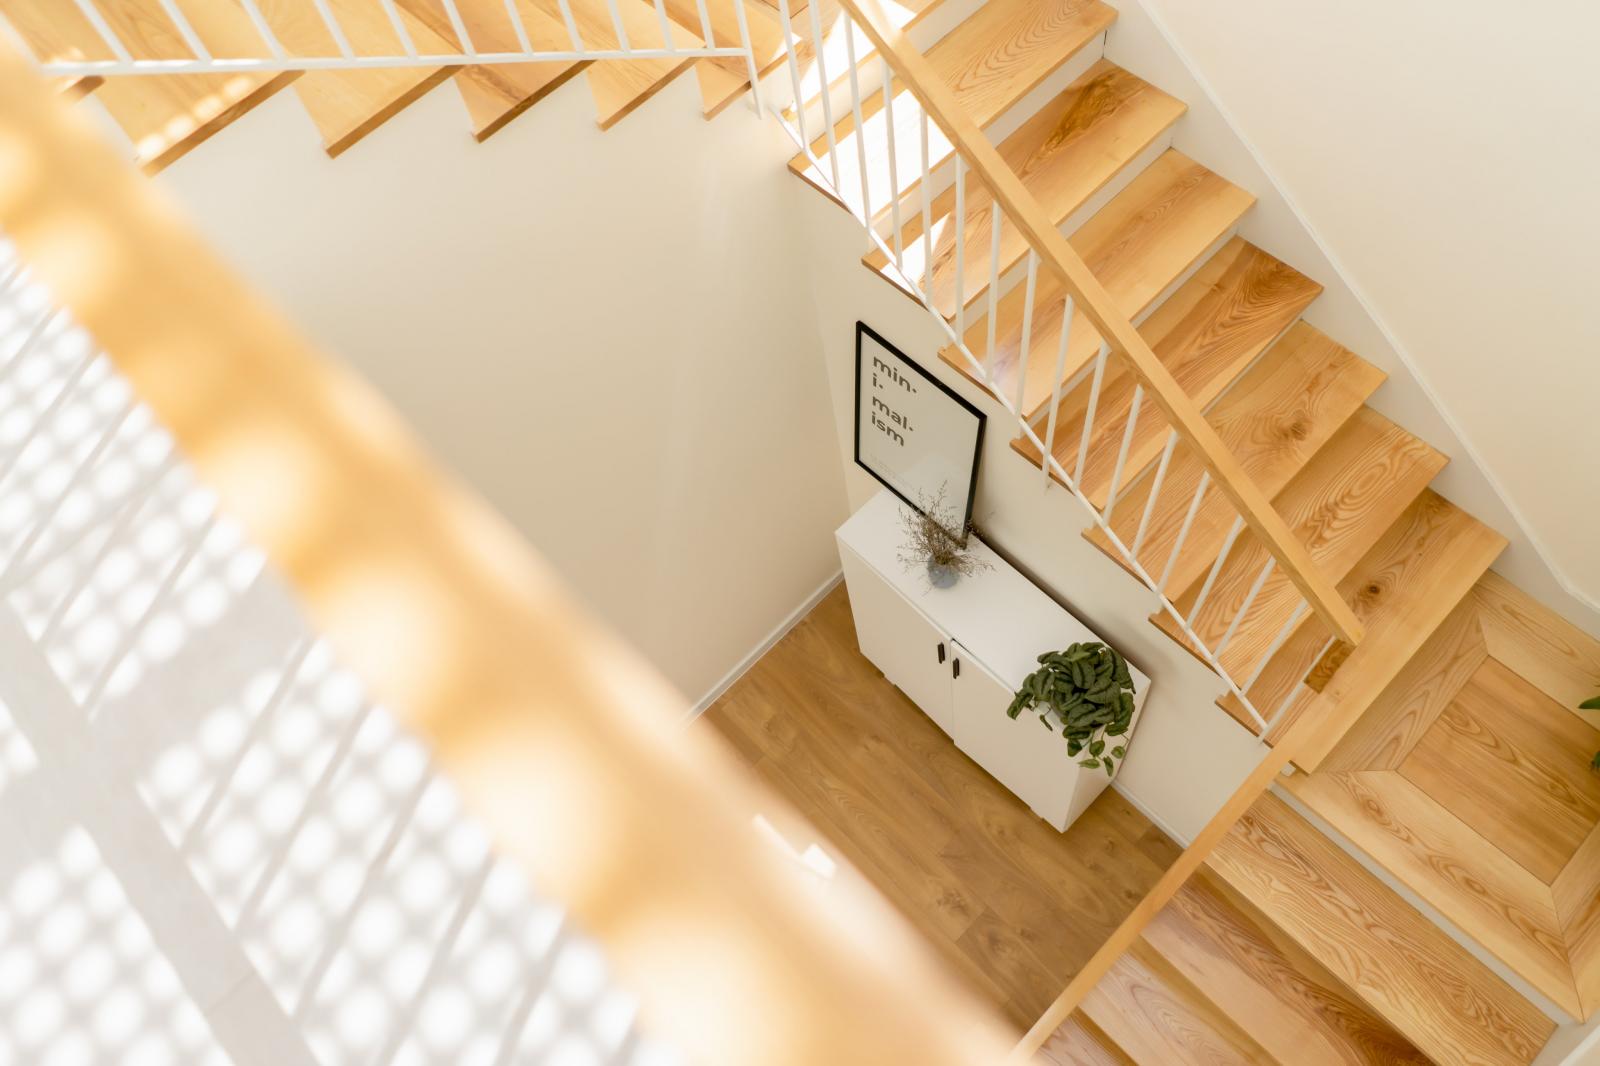 Cầu thang bằng gỗ sáng màu kết nối 2 tầng nhà.